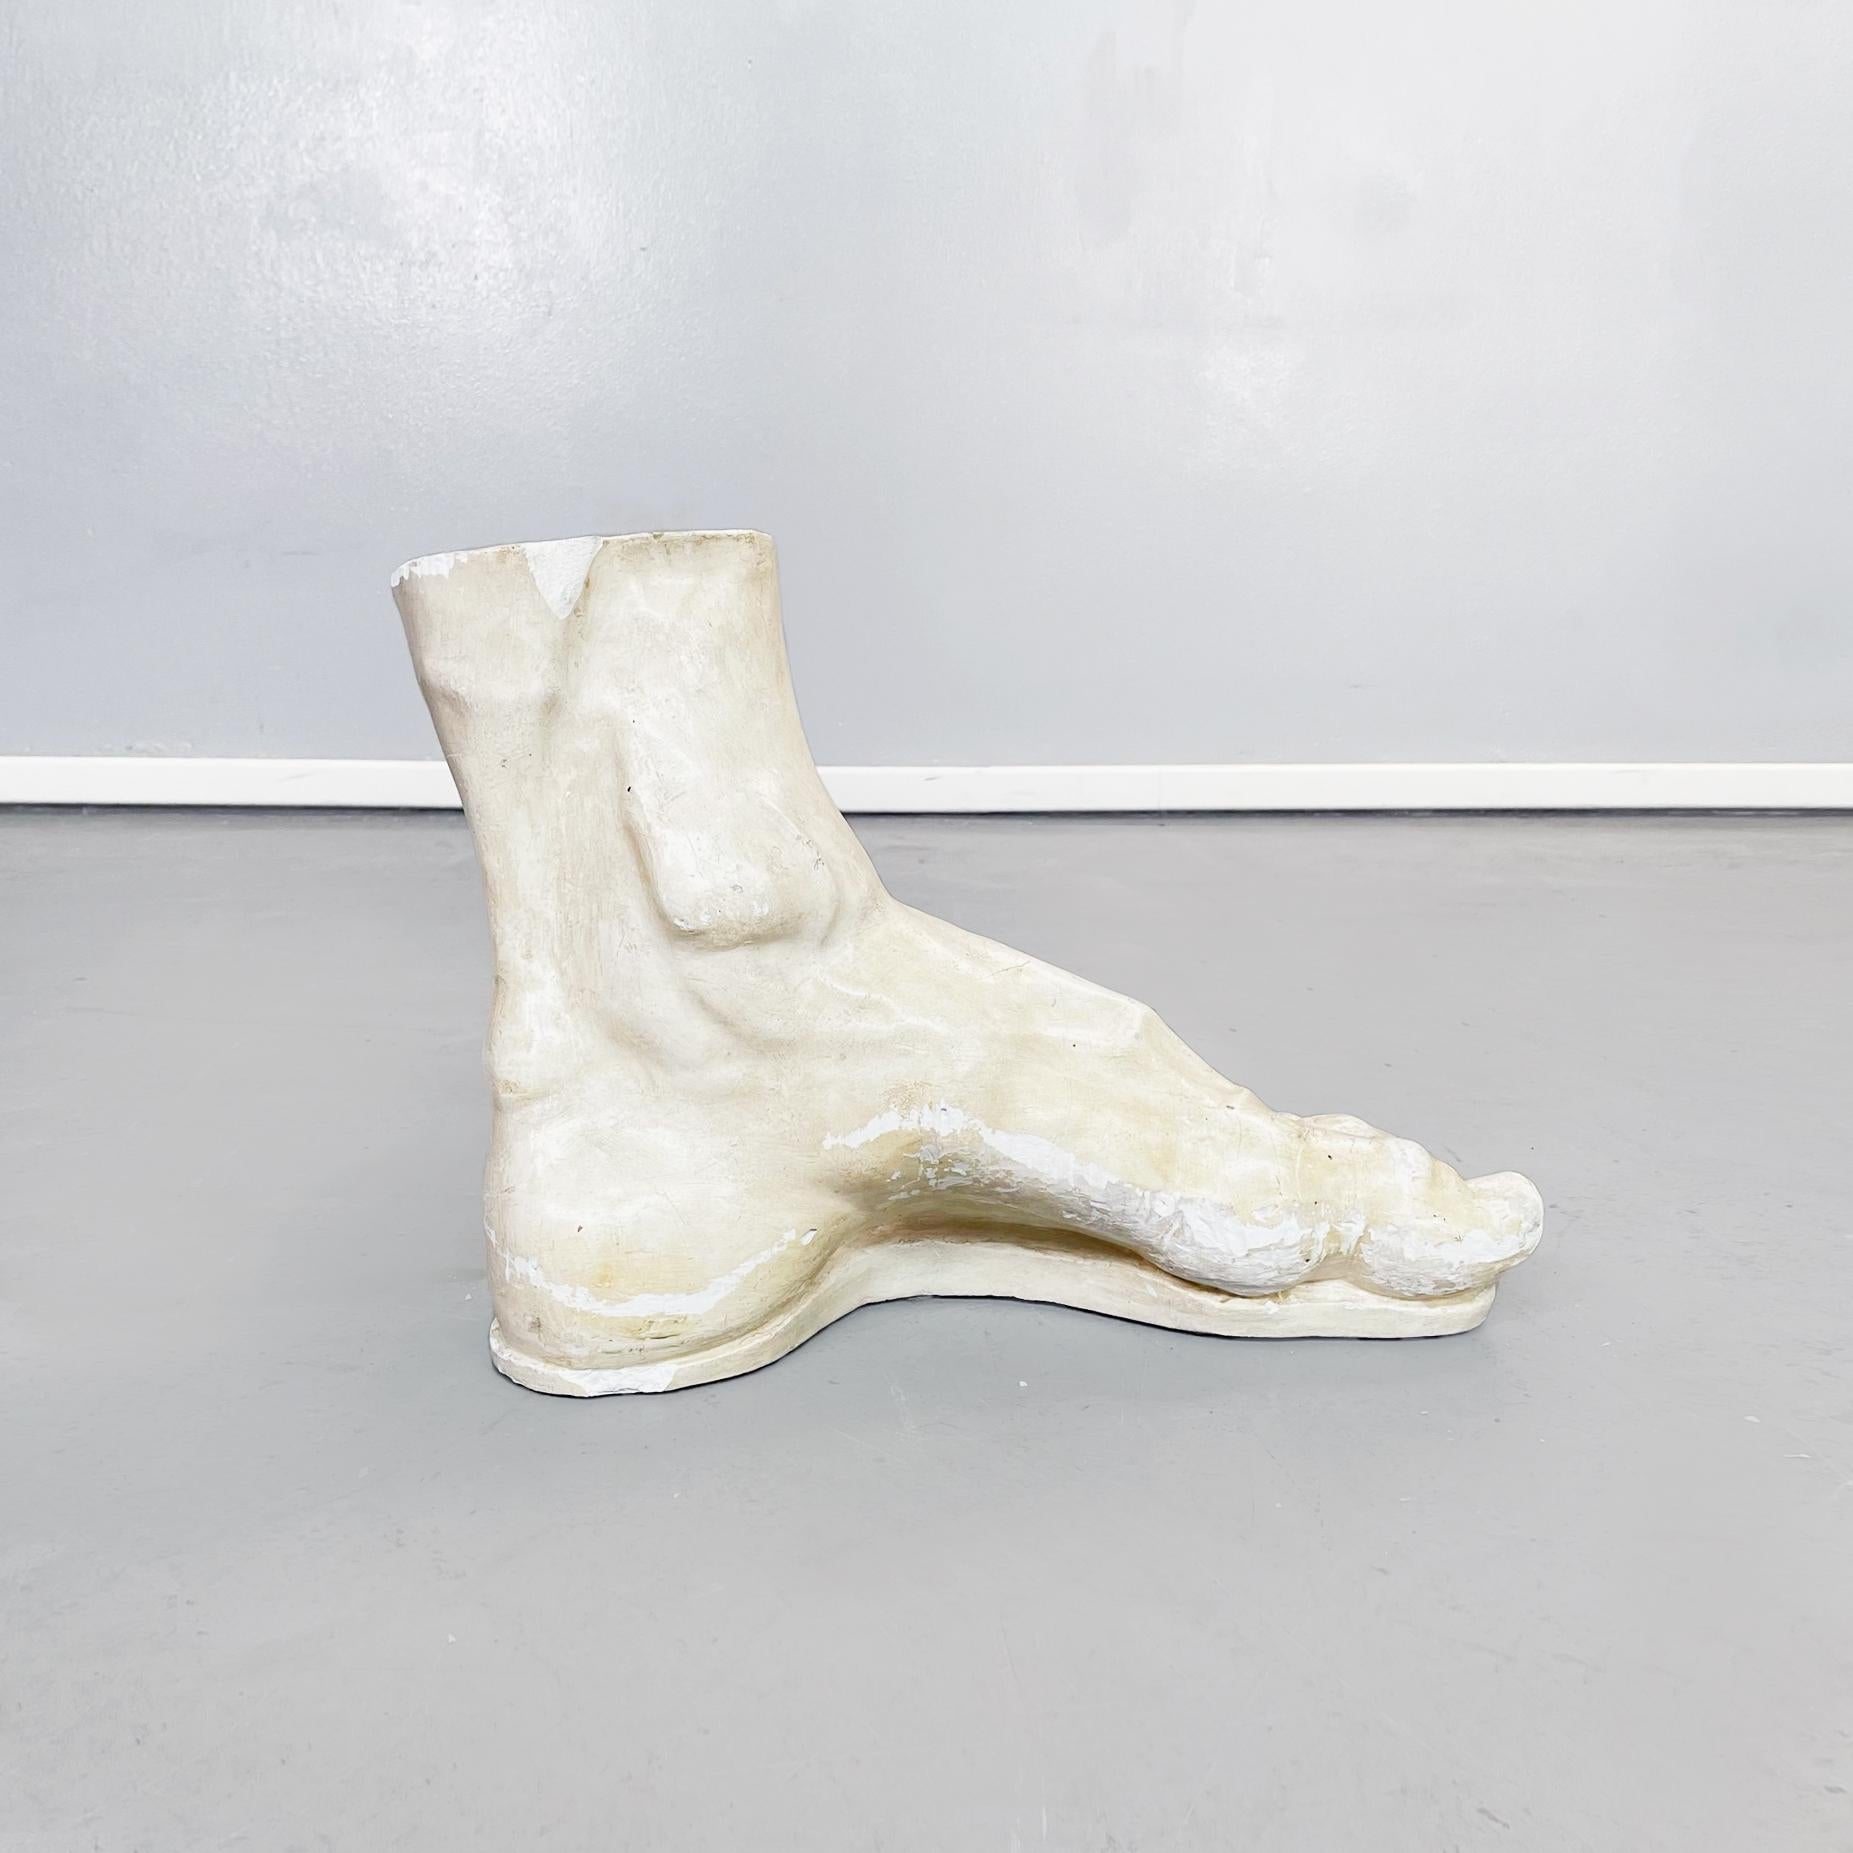 Italian Modern Foot Statue in Light Beige Plaster, 1970s For Sale 1